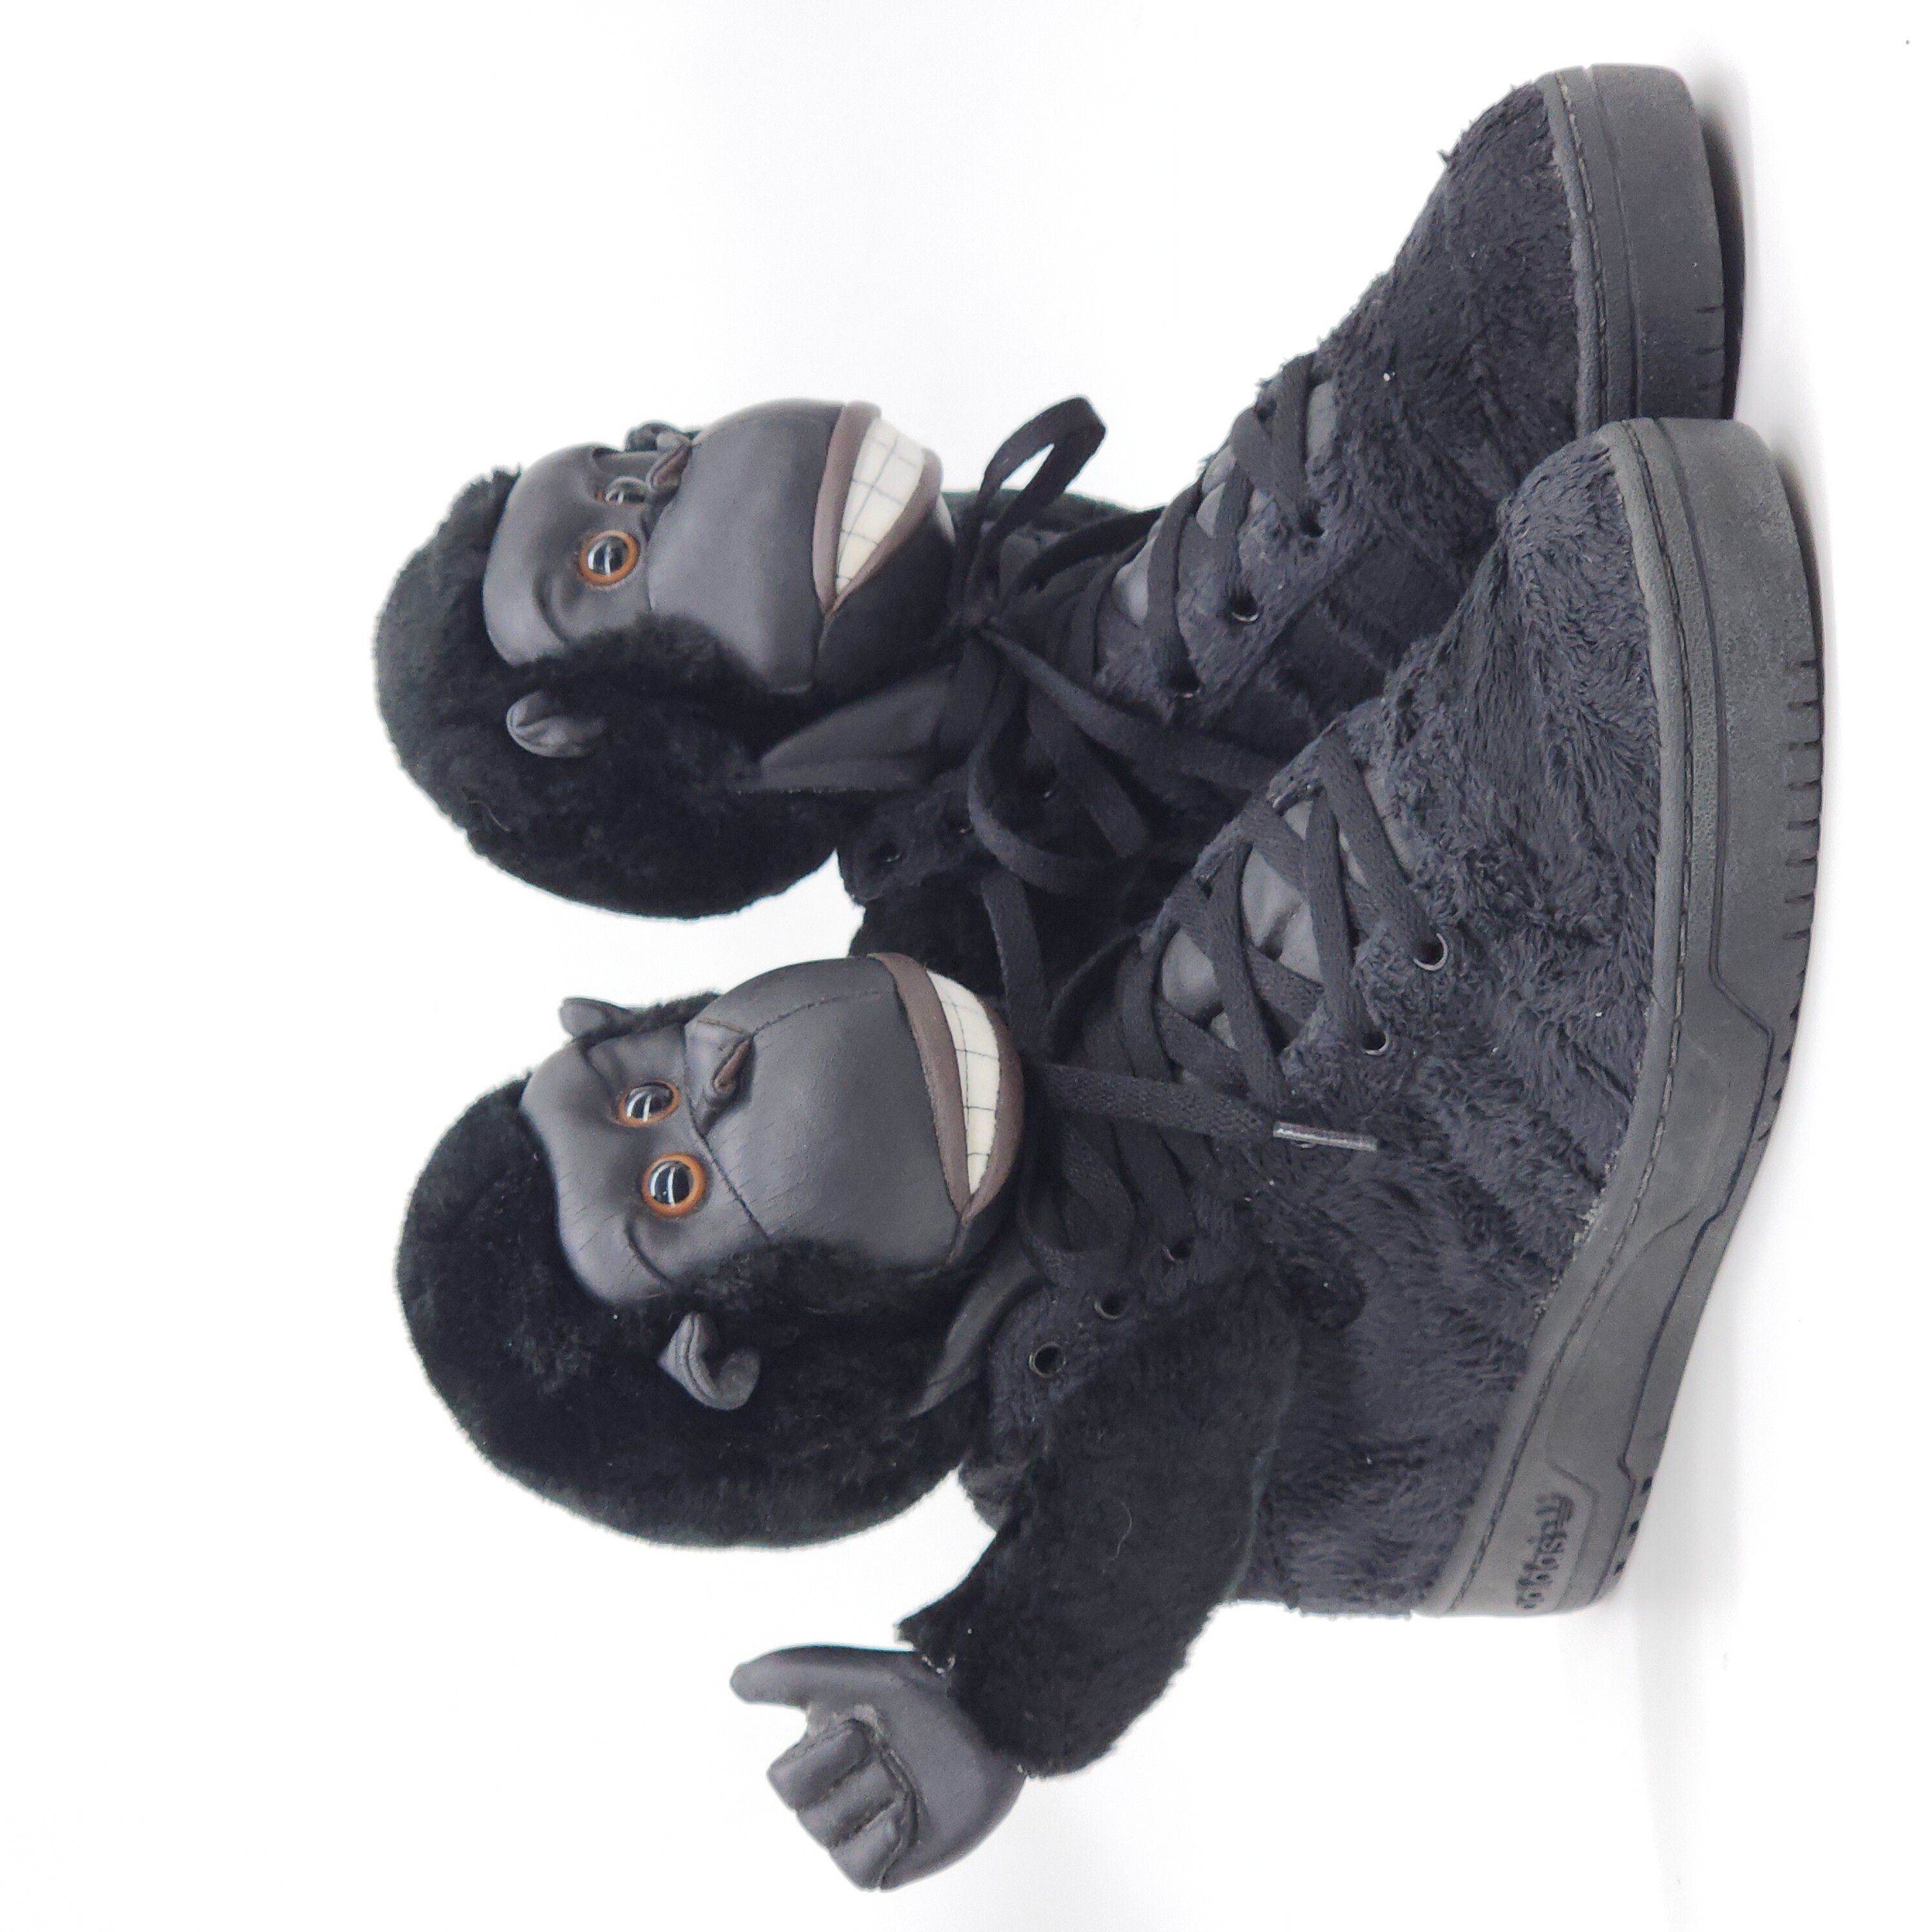 Adidas x Jeremy Scott - Gorilla Sneakers "2 Chainz" - 2